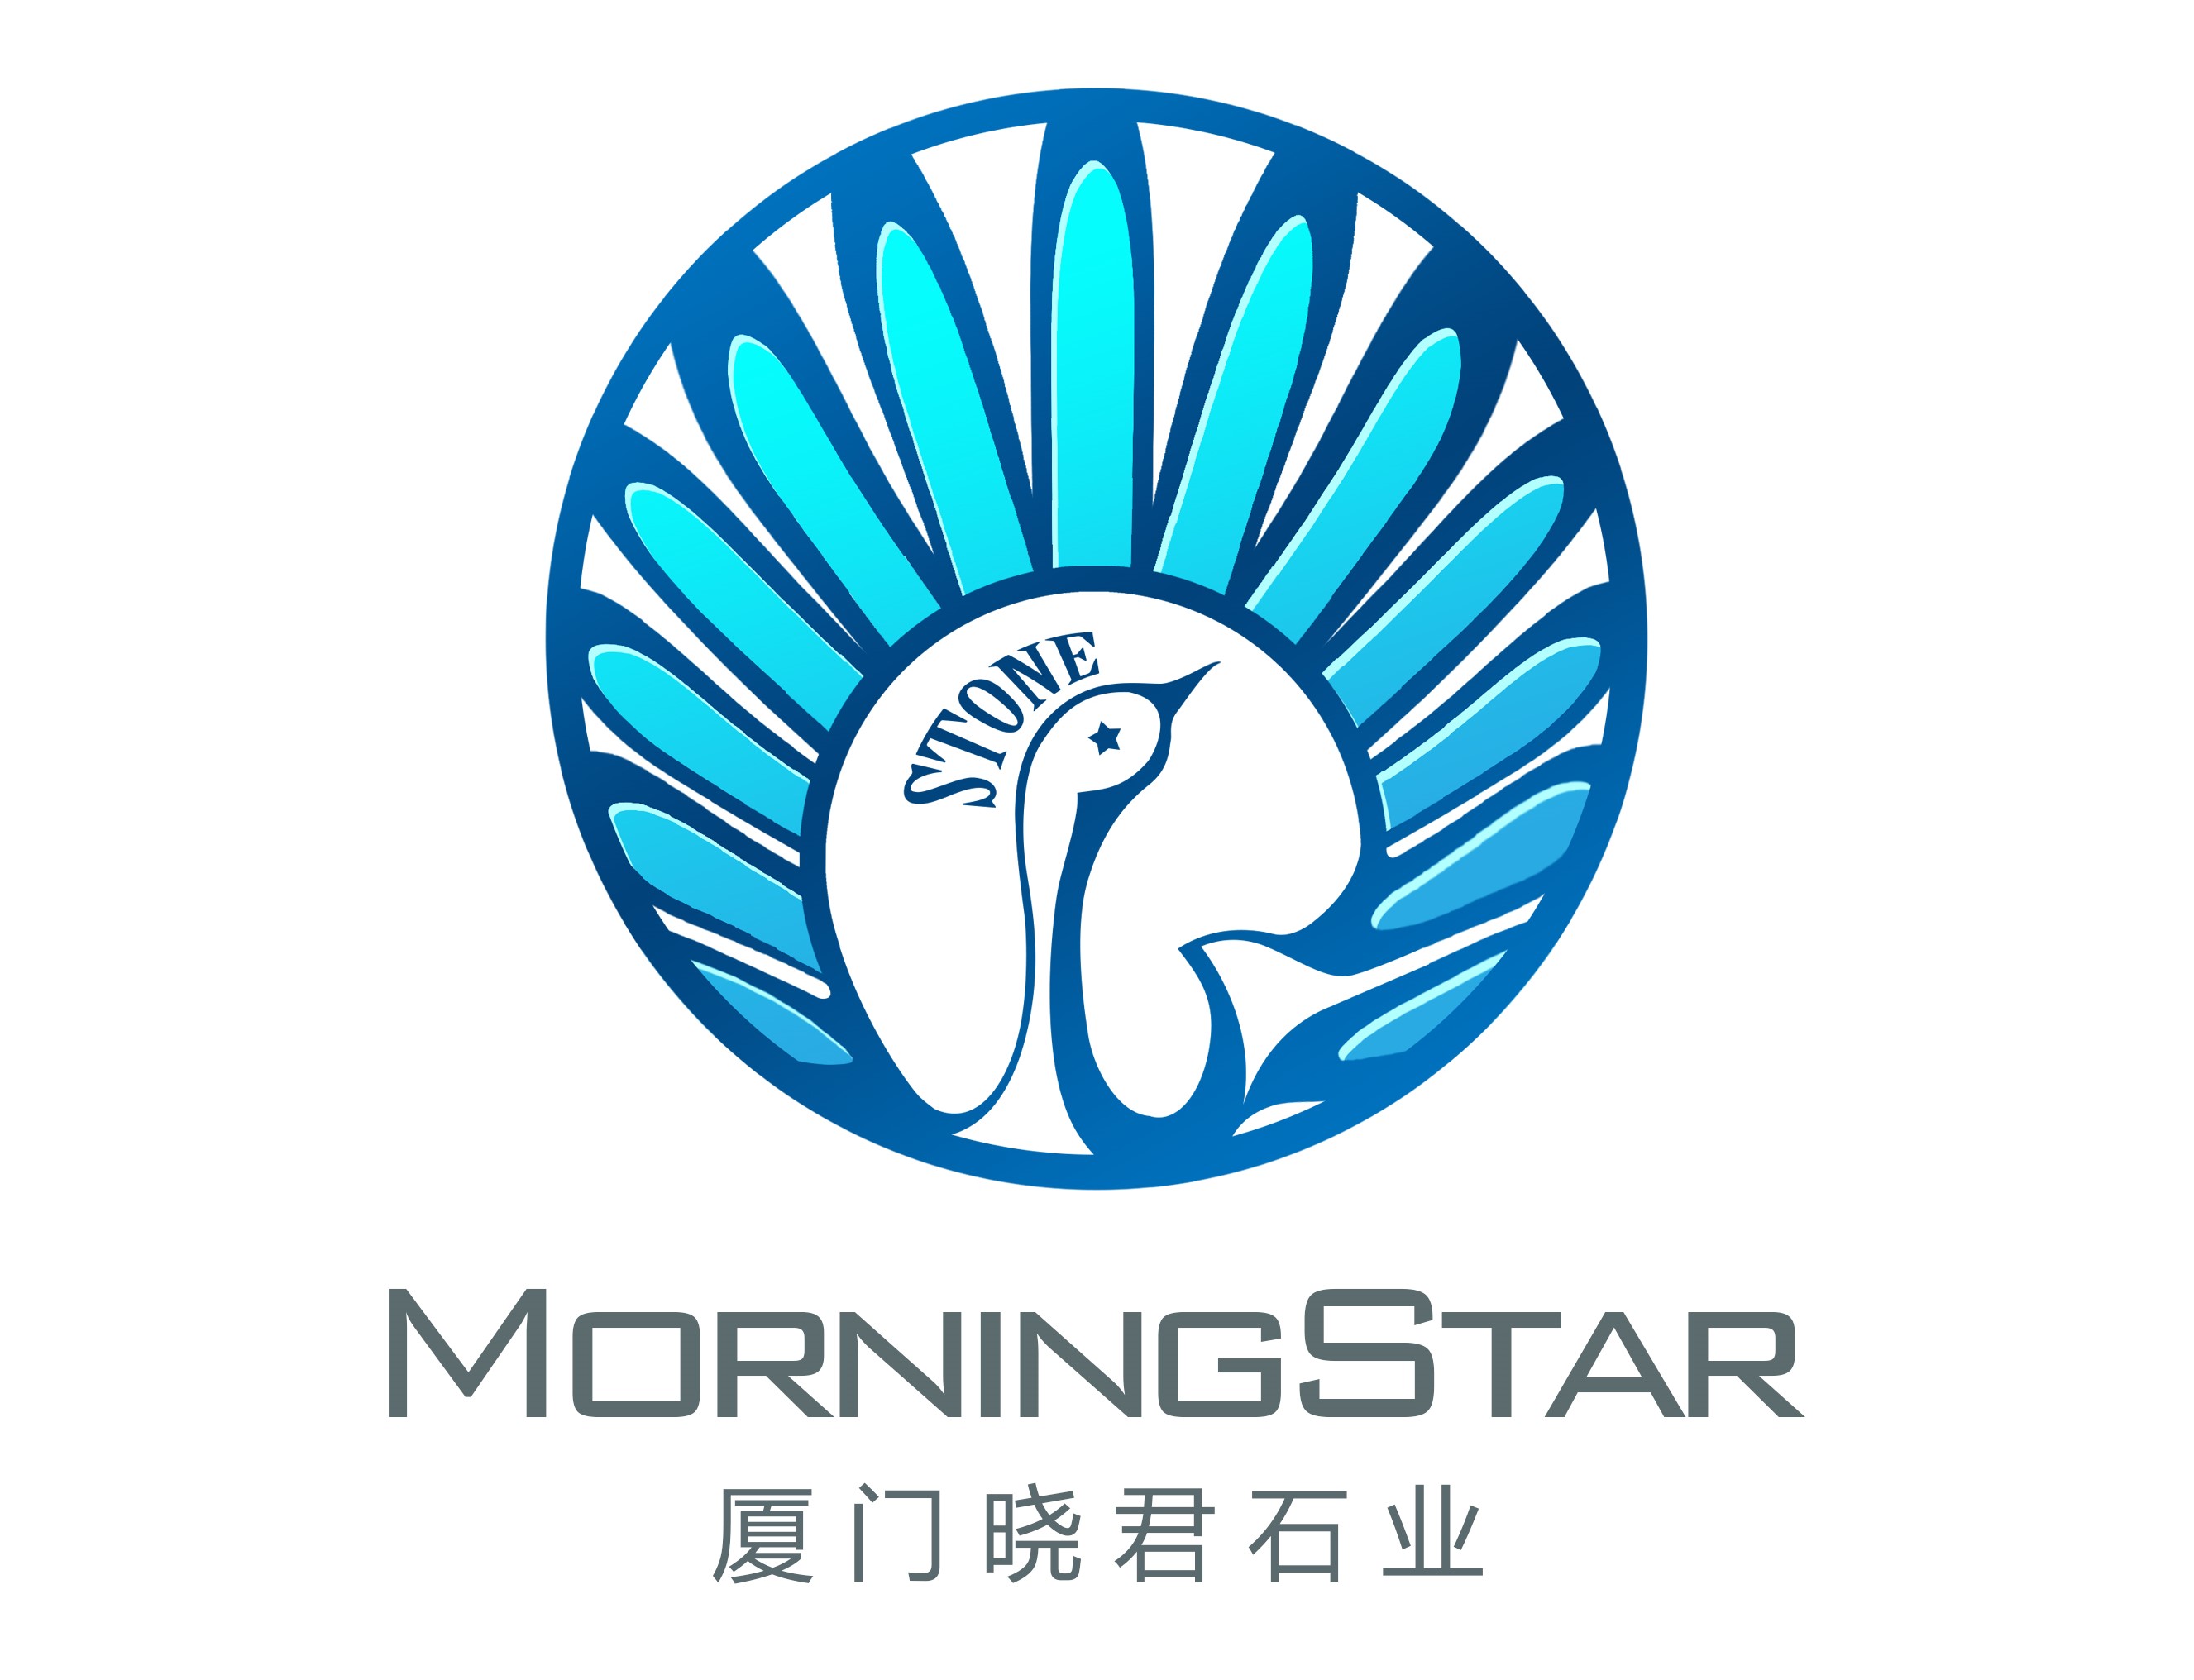 morning star logo2.jpg